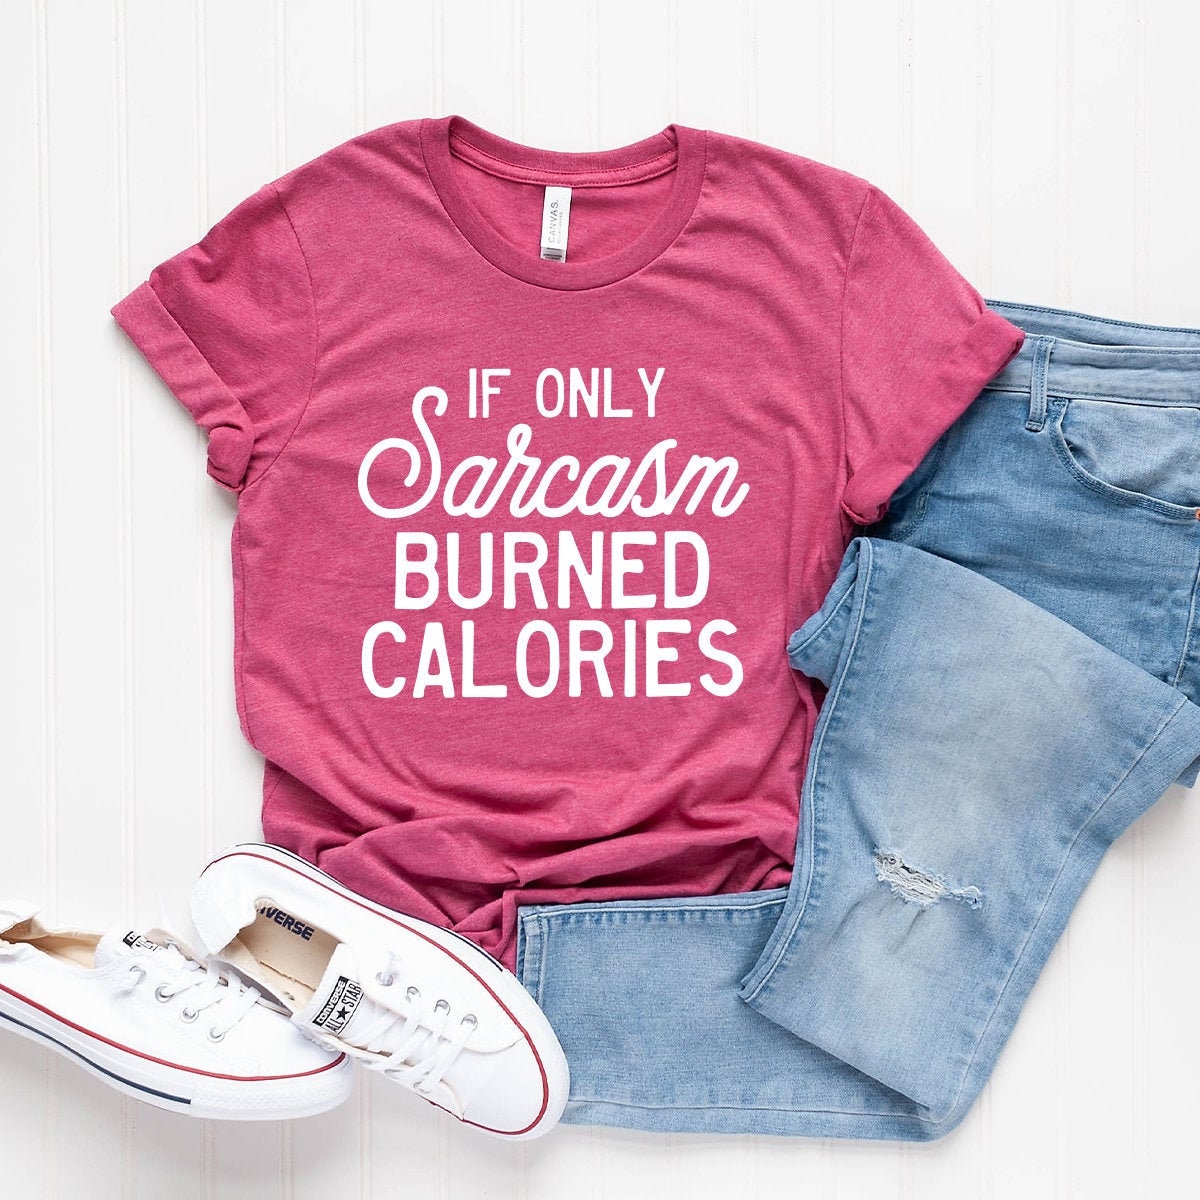 Sarcastic Slogan Shirt, Sarcasm Burned Calories Shirt, Sarcasm T-Shirt, Funny Sarcastic Shirt, Sarcastic Shirt, Funny Shirt - Fastdeliverytees.com